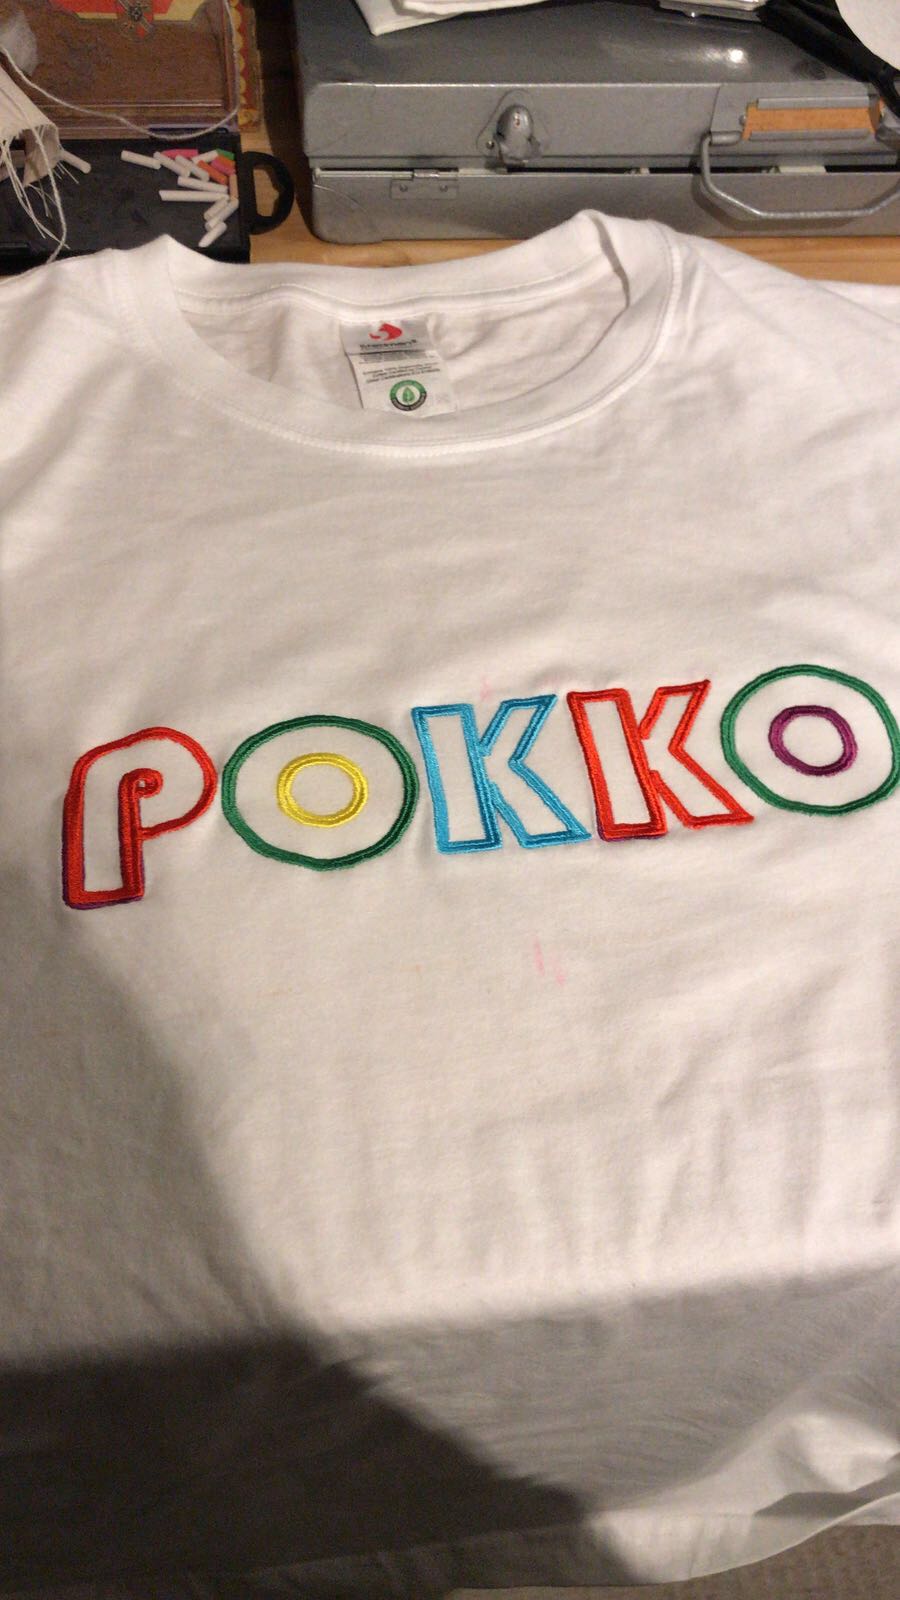 Image of Pokko shirt